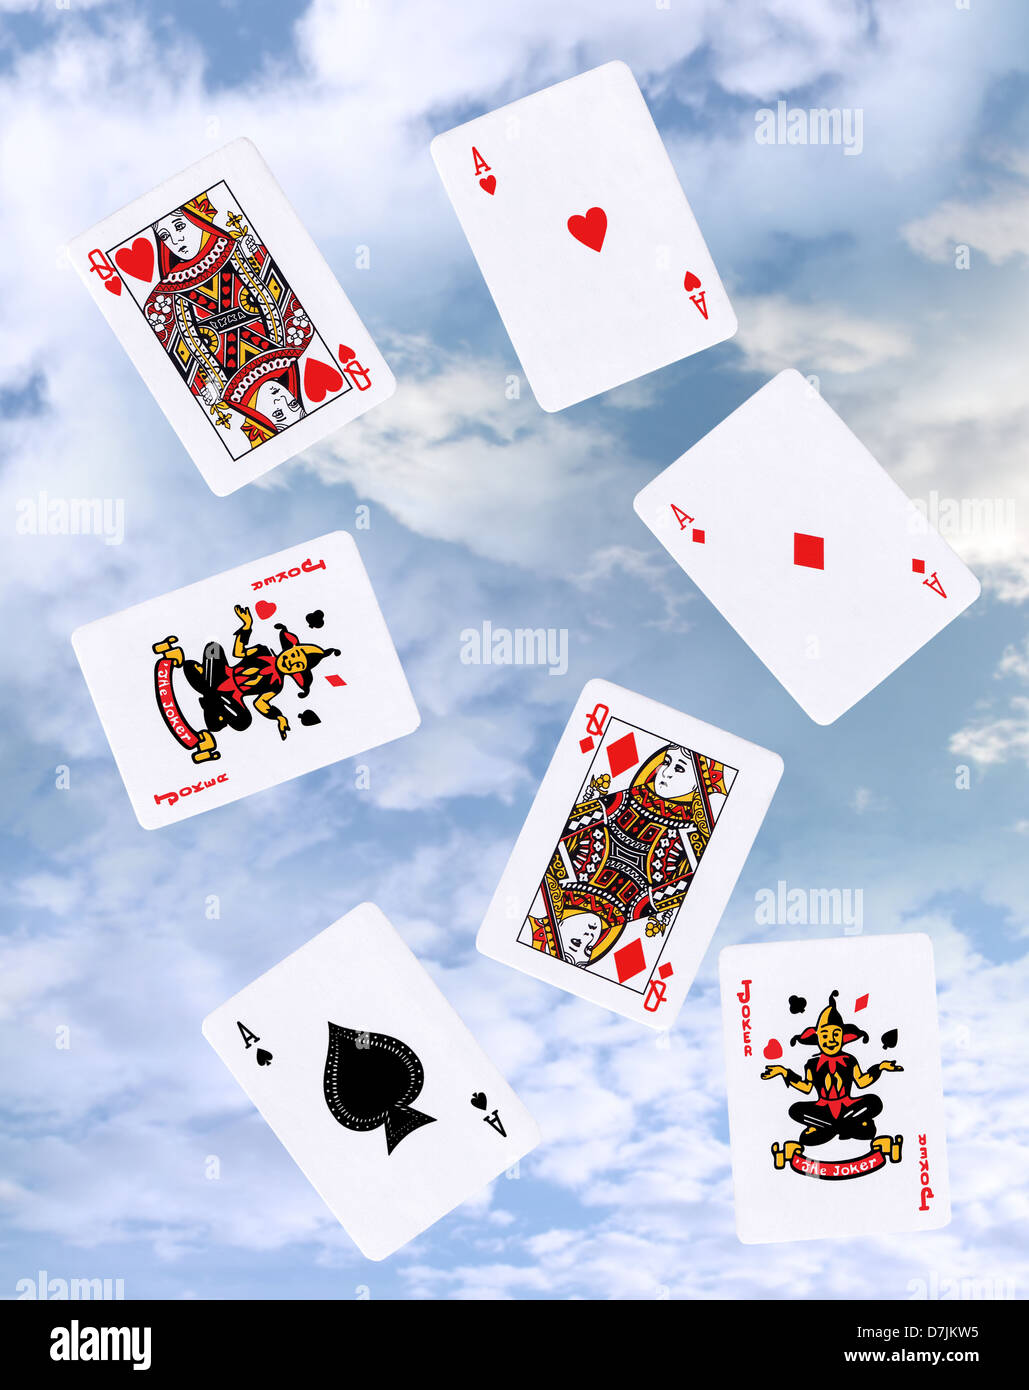 Cartes à jouer dans l'air comme en cloud gaming sur internet Banque D'Images